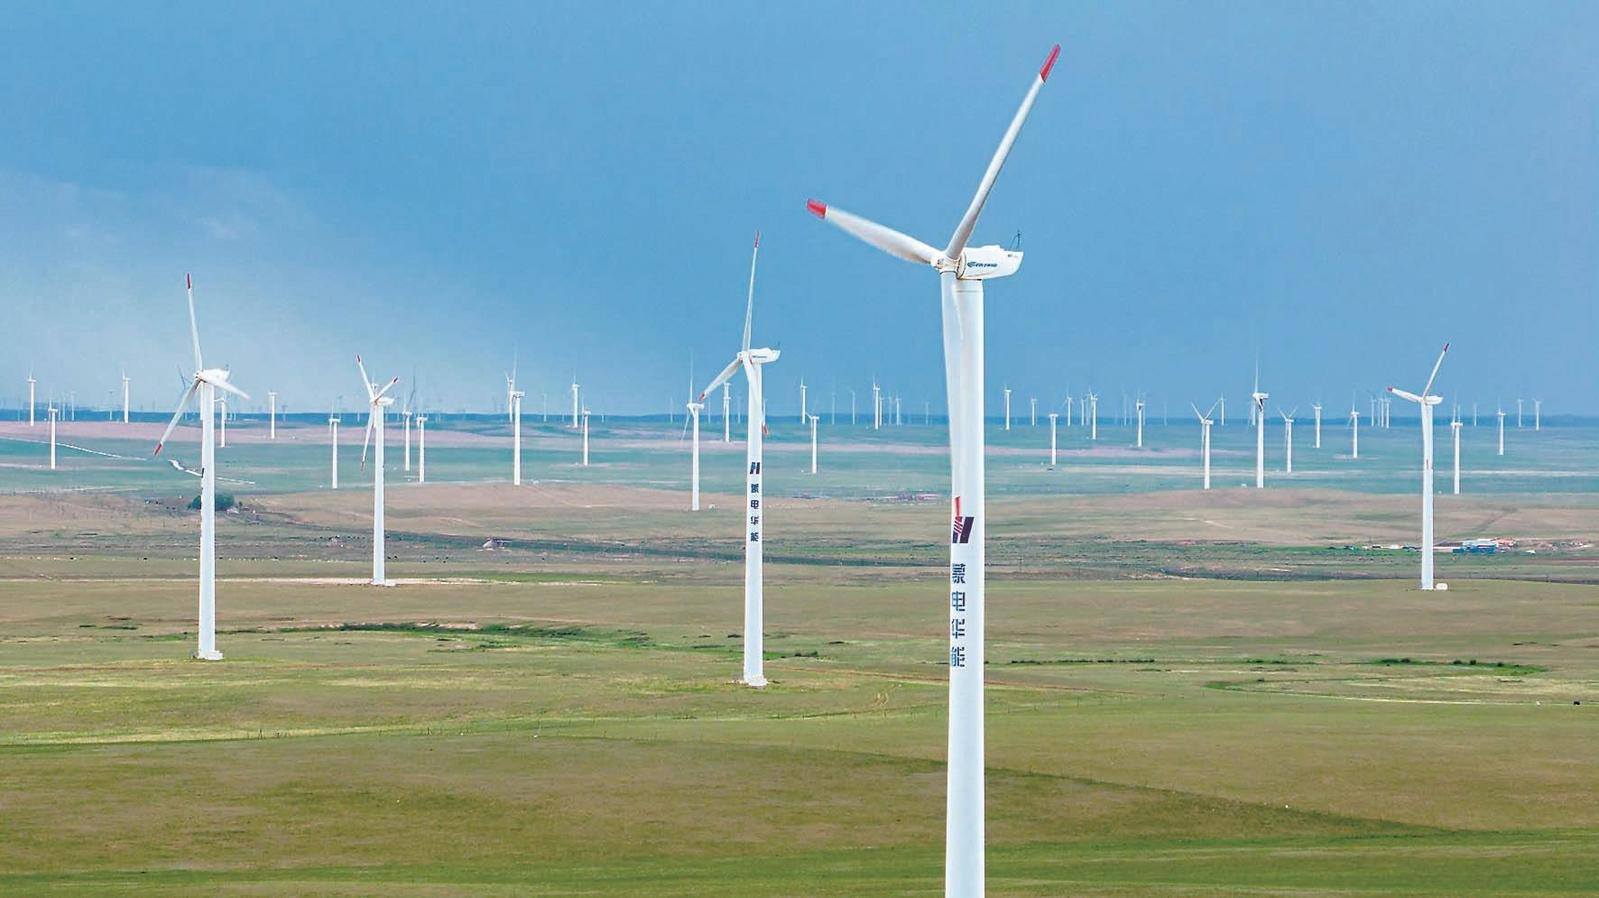 7月12日,在白云鄂博矿区,一排排风力发电机与草原构成一幅美丽画卷